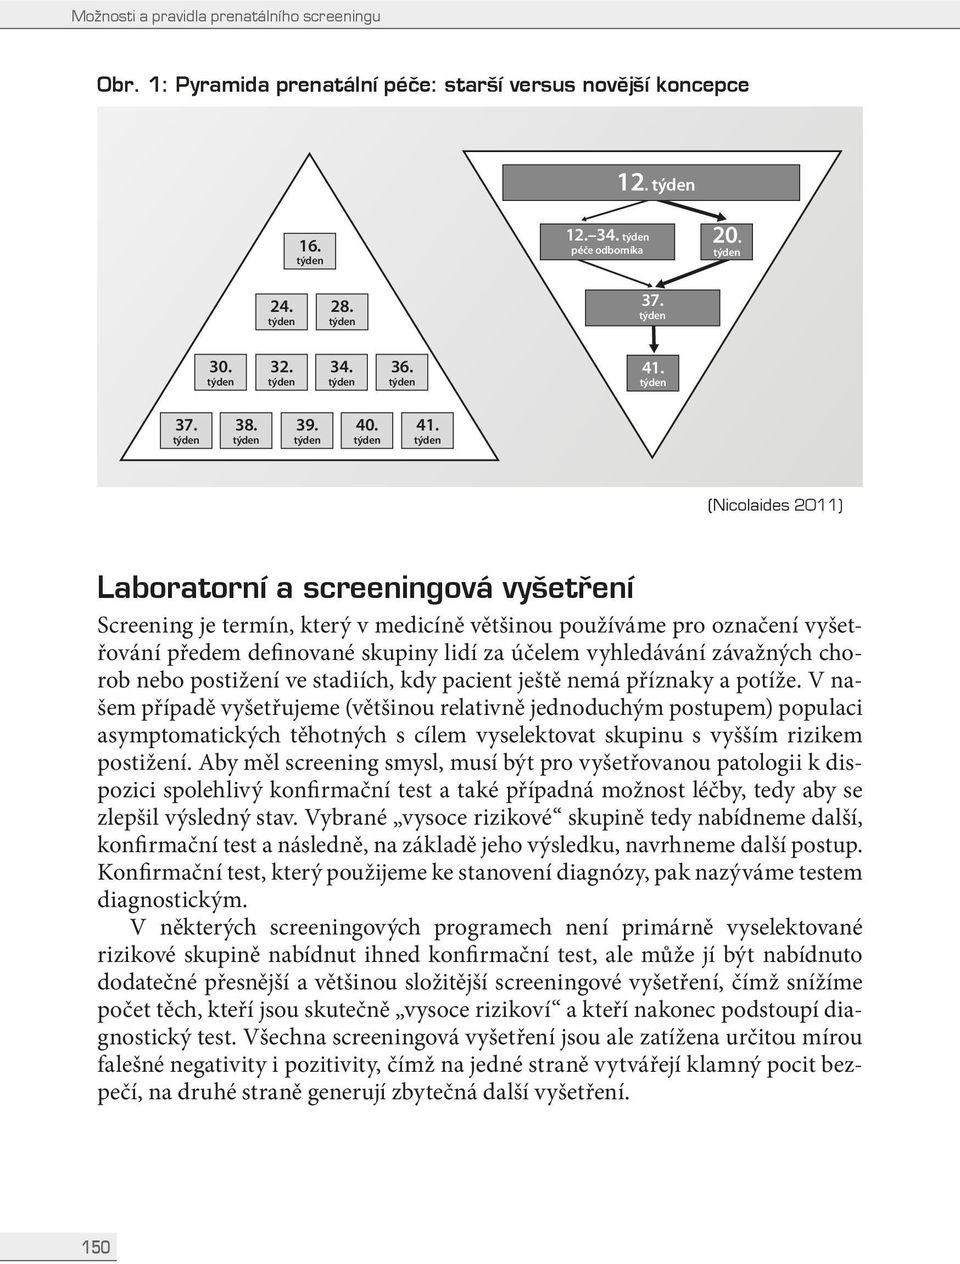 (Nicolaides 2011) Laboratorní a screeningová vyšetření Screening je termín, který v medicíně většinou používáme pro označení vyšetřování předem definované skupiny lidí za účelem vyhledávání závažných